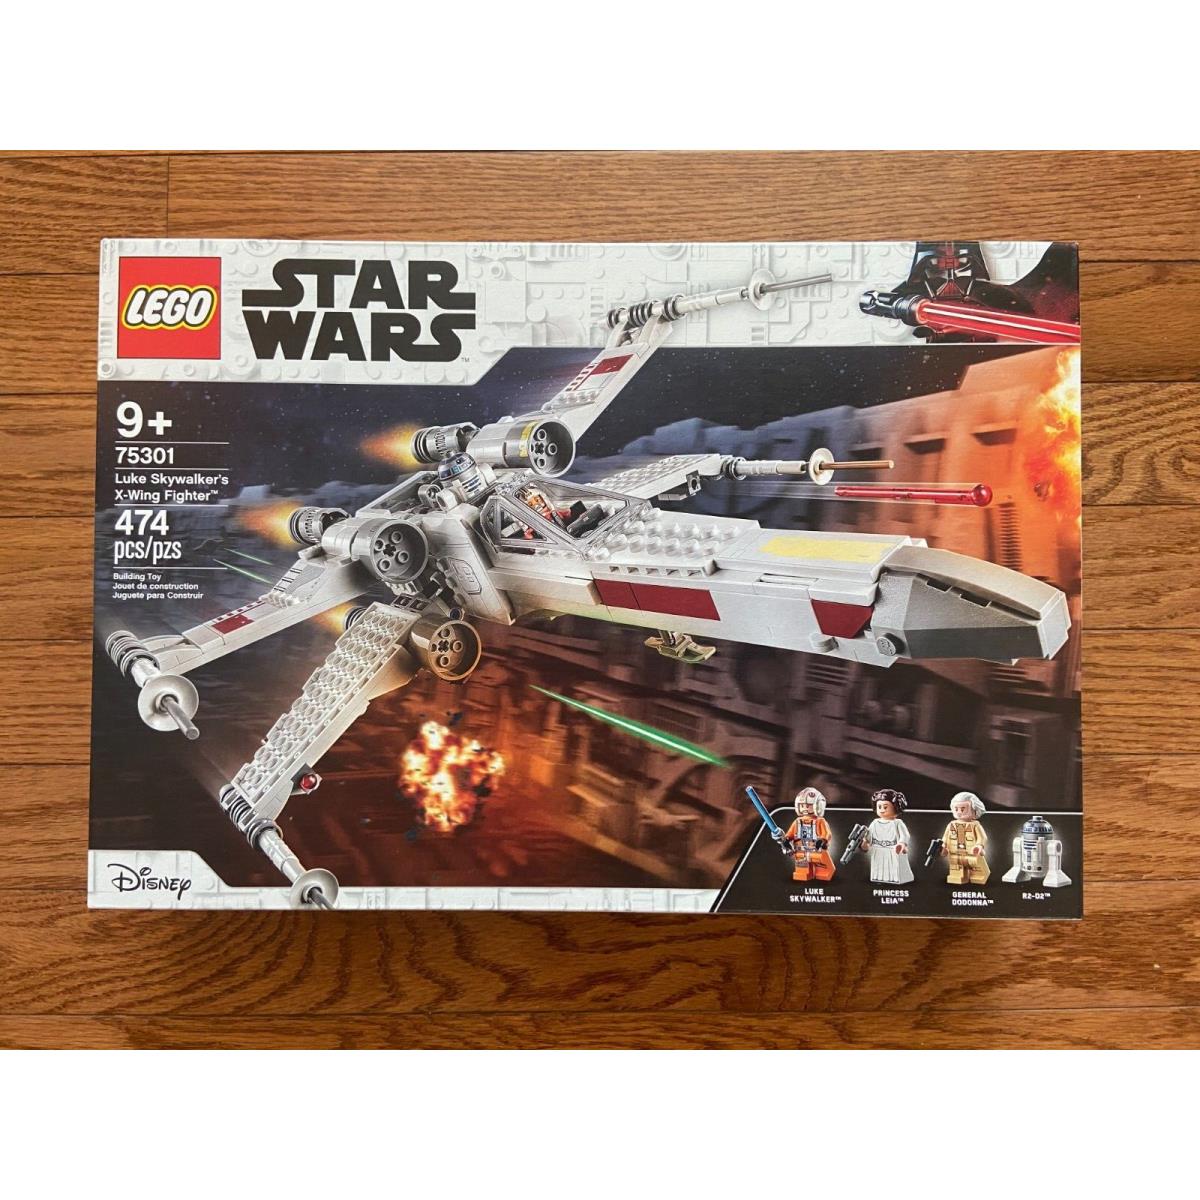 Lego Star Wars Luke Skywalker s X-wing Fighter 75301 Building Kit 474 Pieces